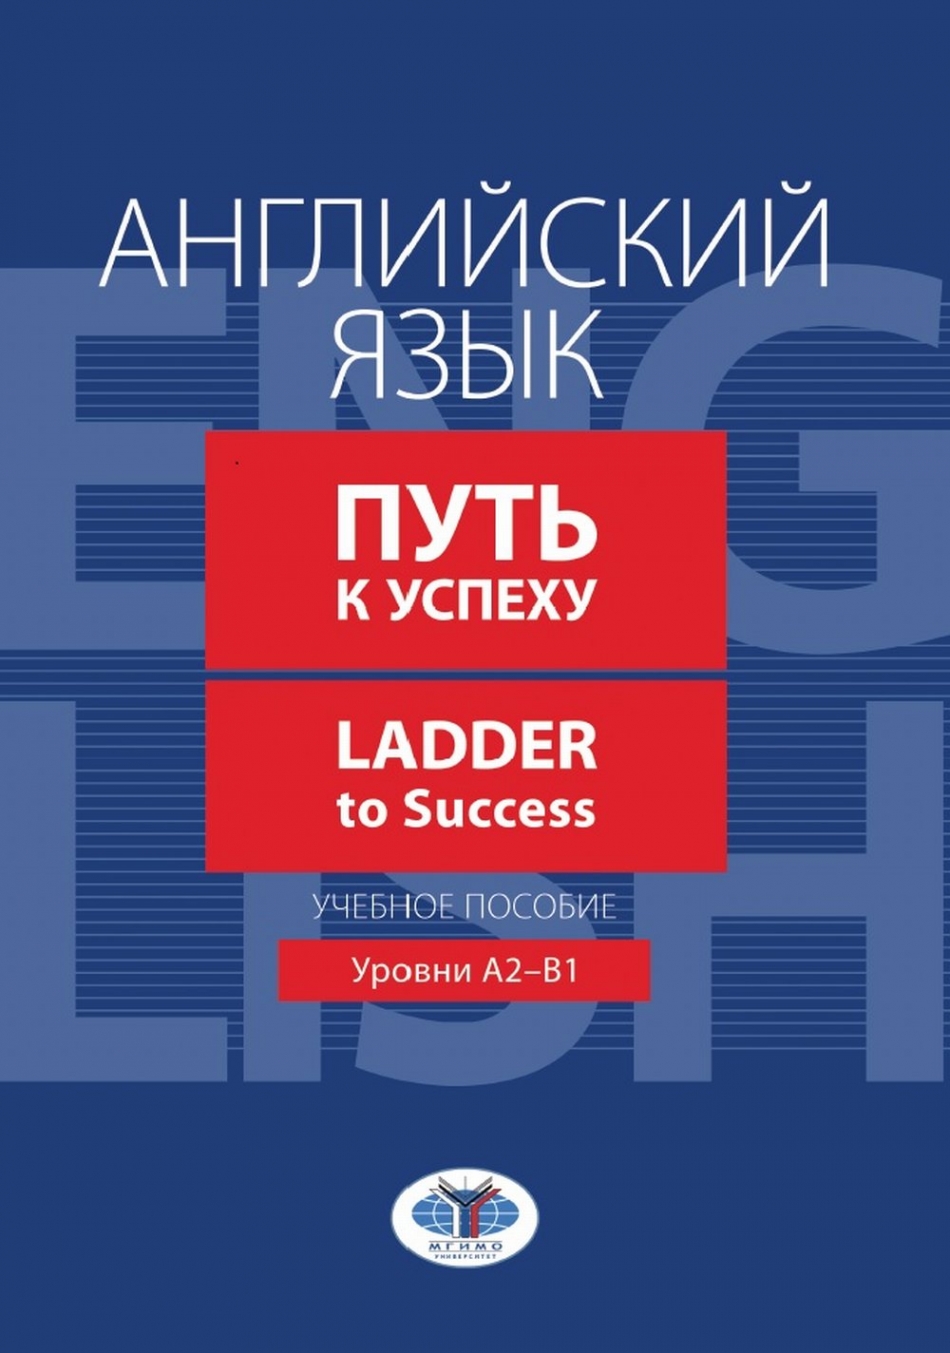 Гресько В.Н., Гетало О.Ю., Гуреева А.В. Английский язык. Путь к успеху / Ladder to Success: уровни А2-В1 